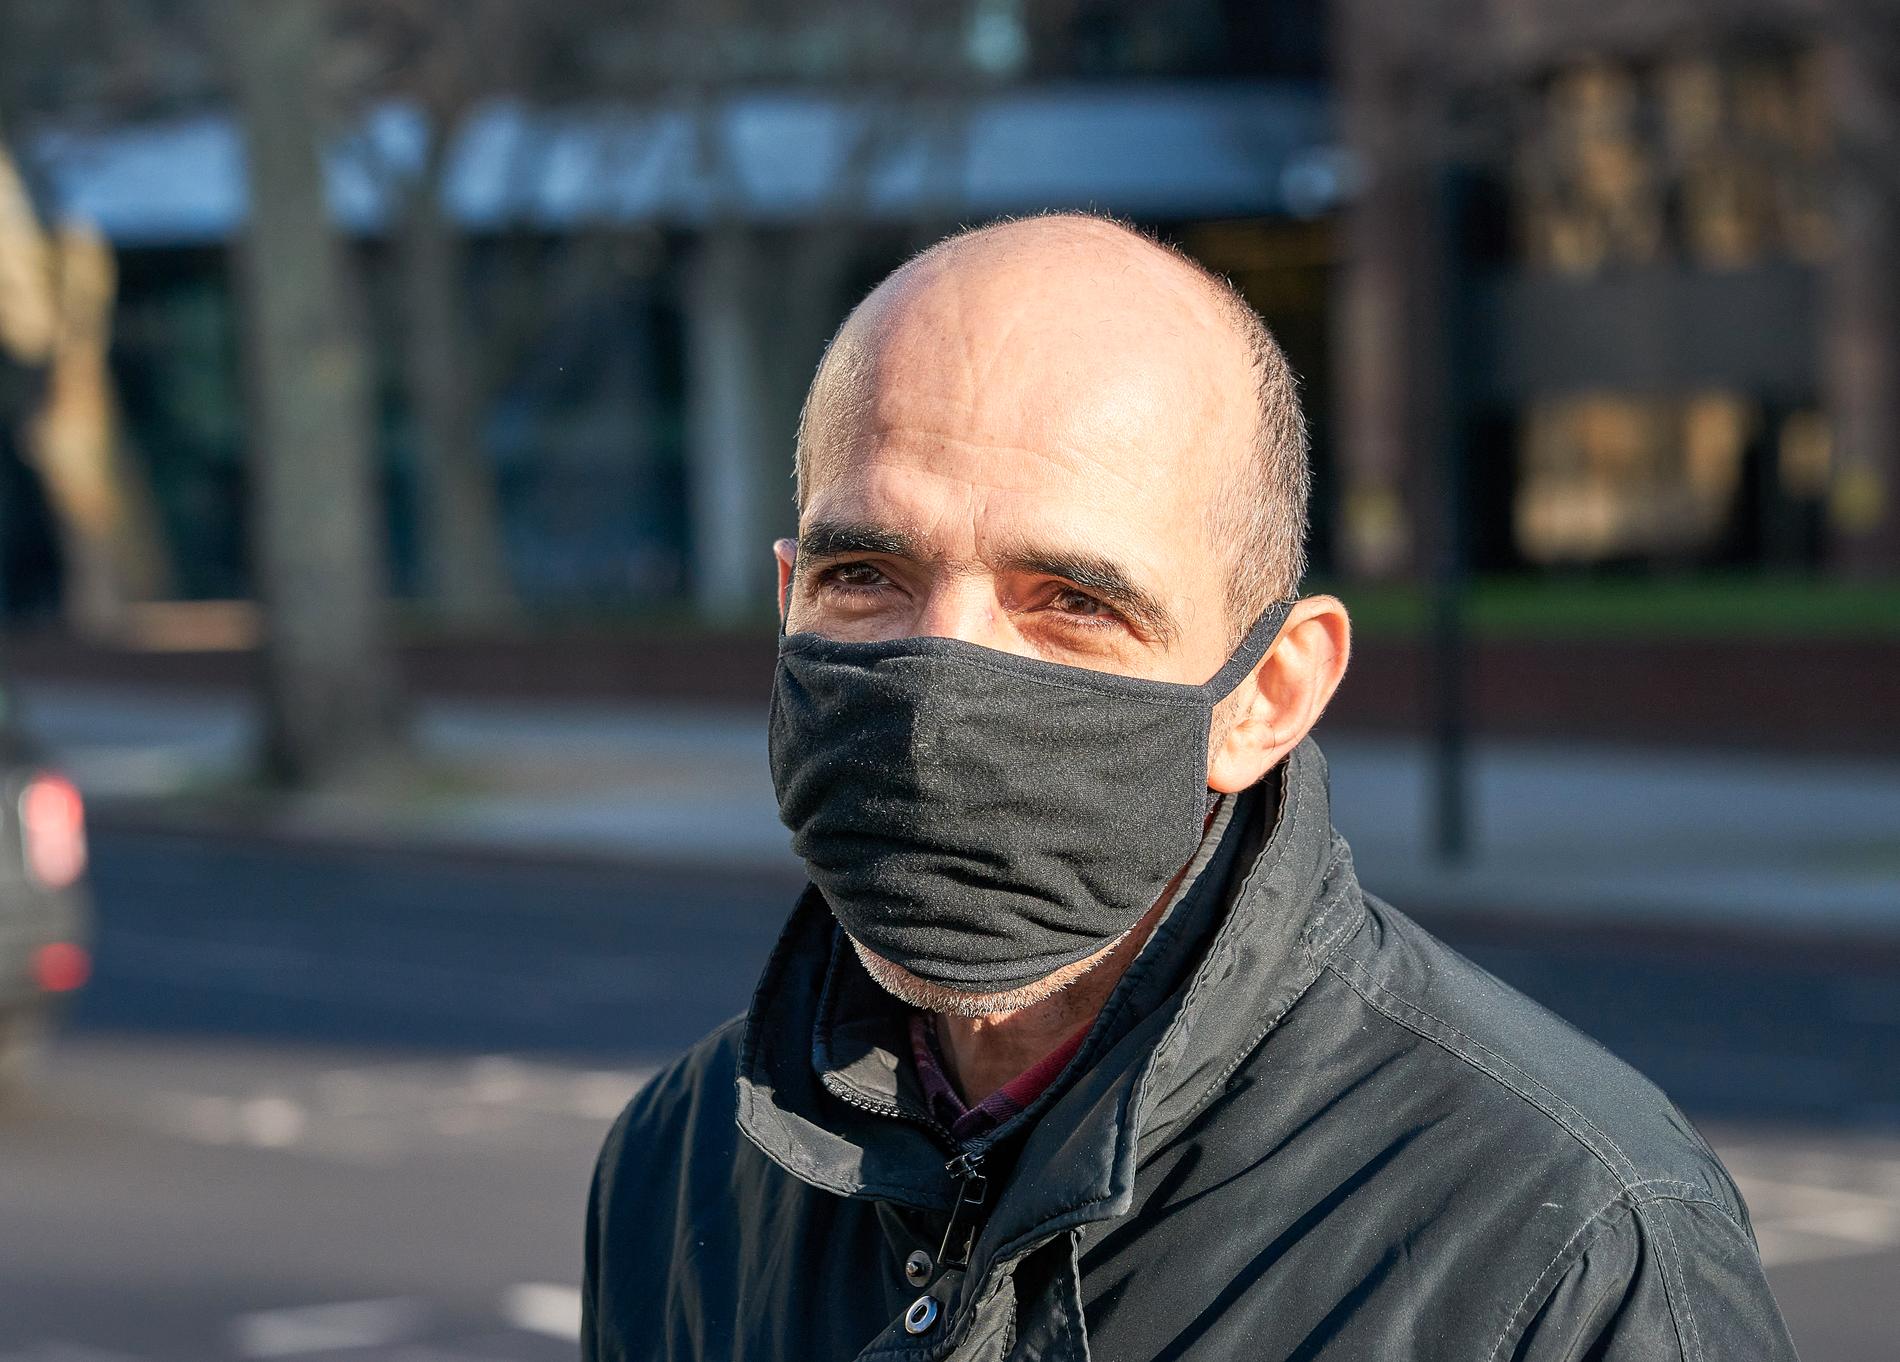 Muanet Xhenaili, 48,  tivlar på att coronaviruset är farligare än en vanlig influensa, men väljer ändå att bära mask. 